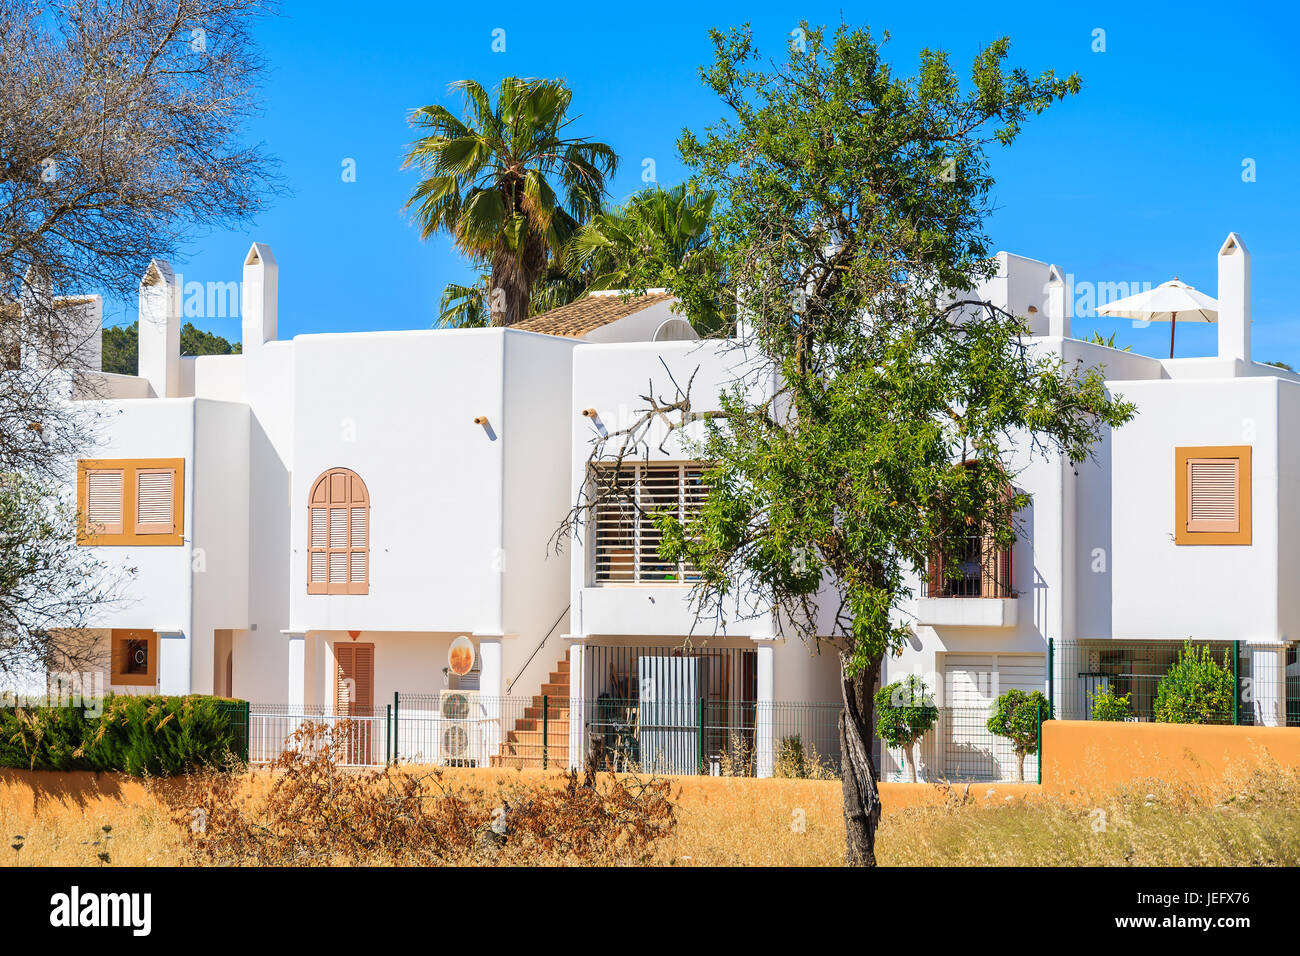 Typische Architektur von Sant Carles de Peralta Dorf mit weiß getünchten Häusern, Insel Ibiza, Spanien Stockfoto